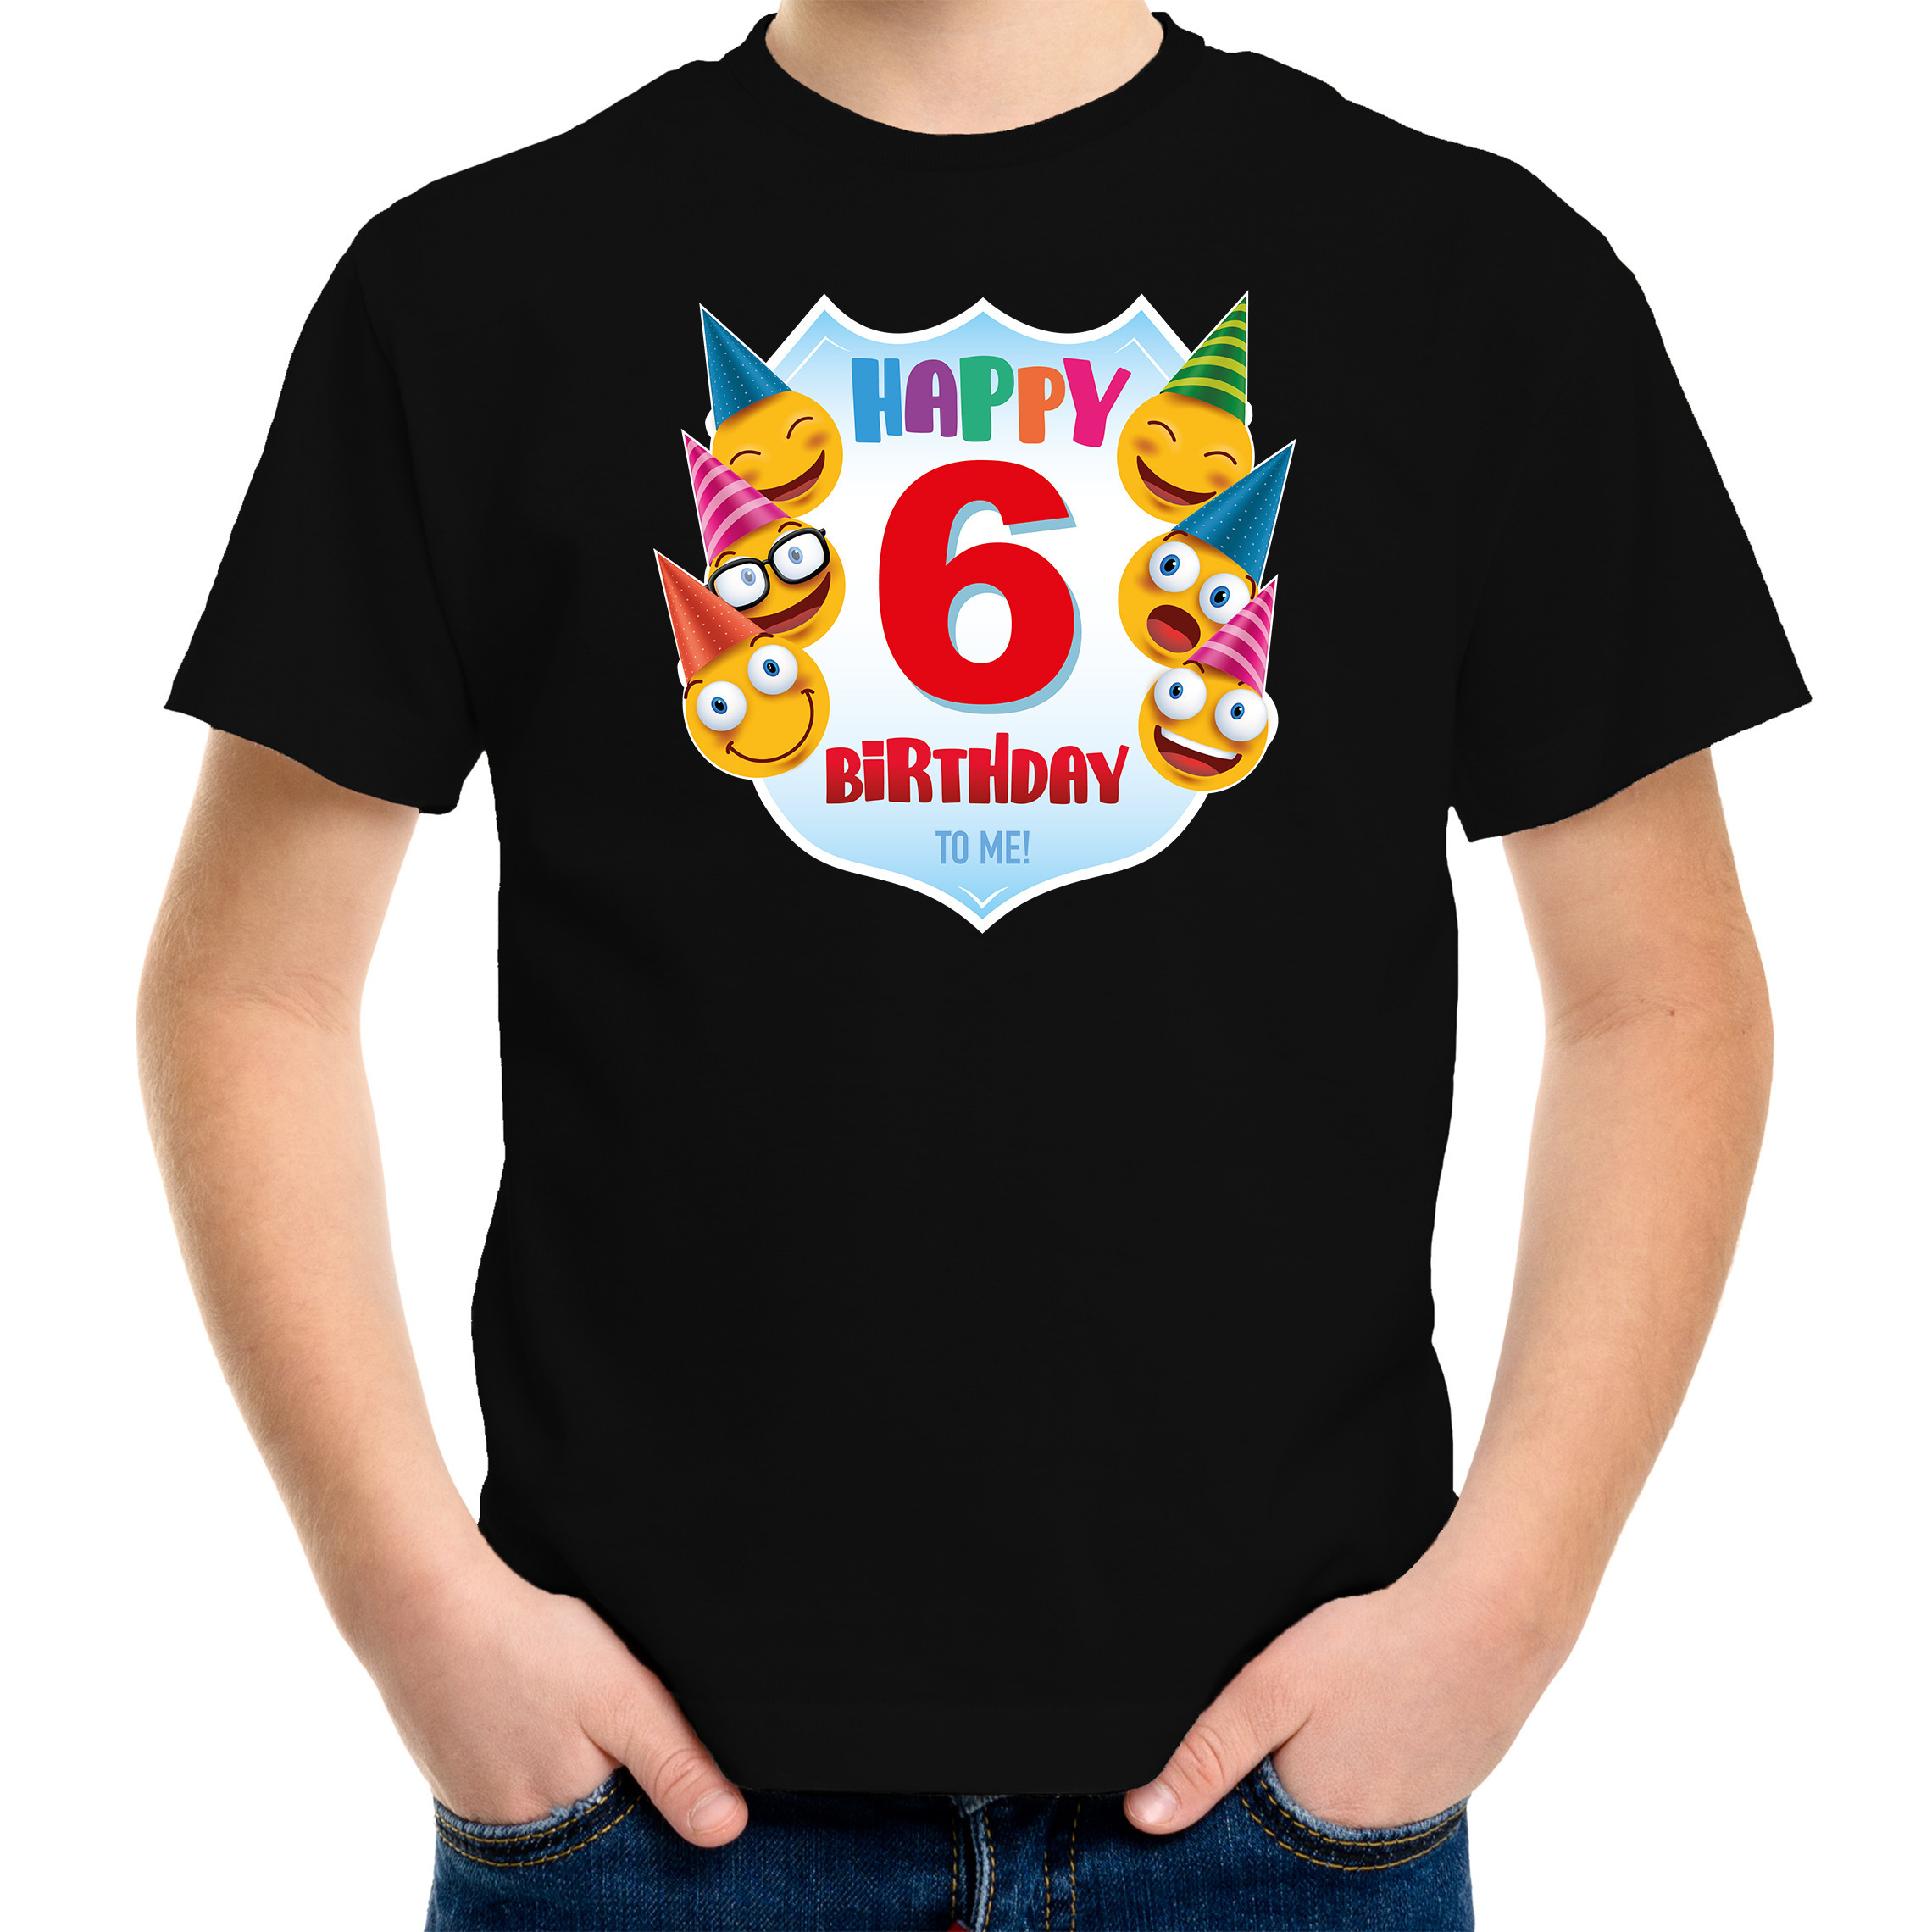 Happy birthday 6e verjaardag t-shirt - shirt 6 jaar met emoticons zwart voor kleuters - kinderen